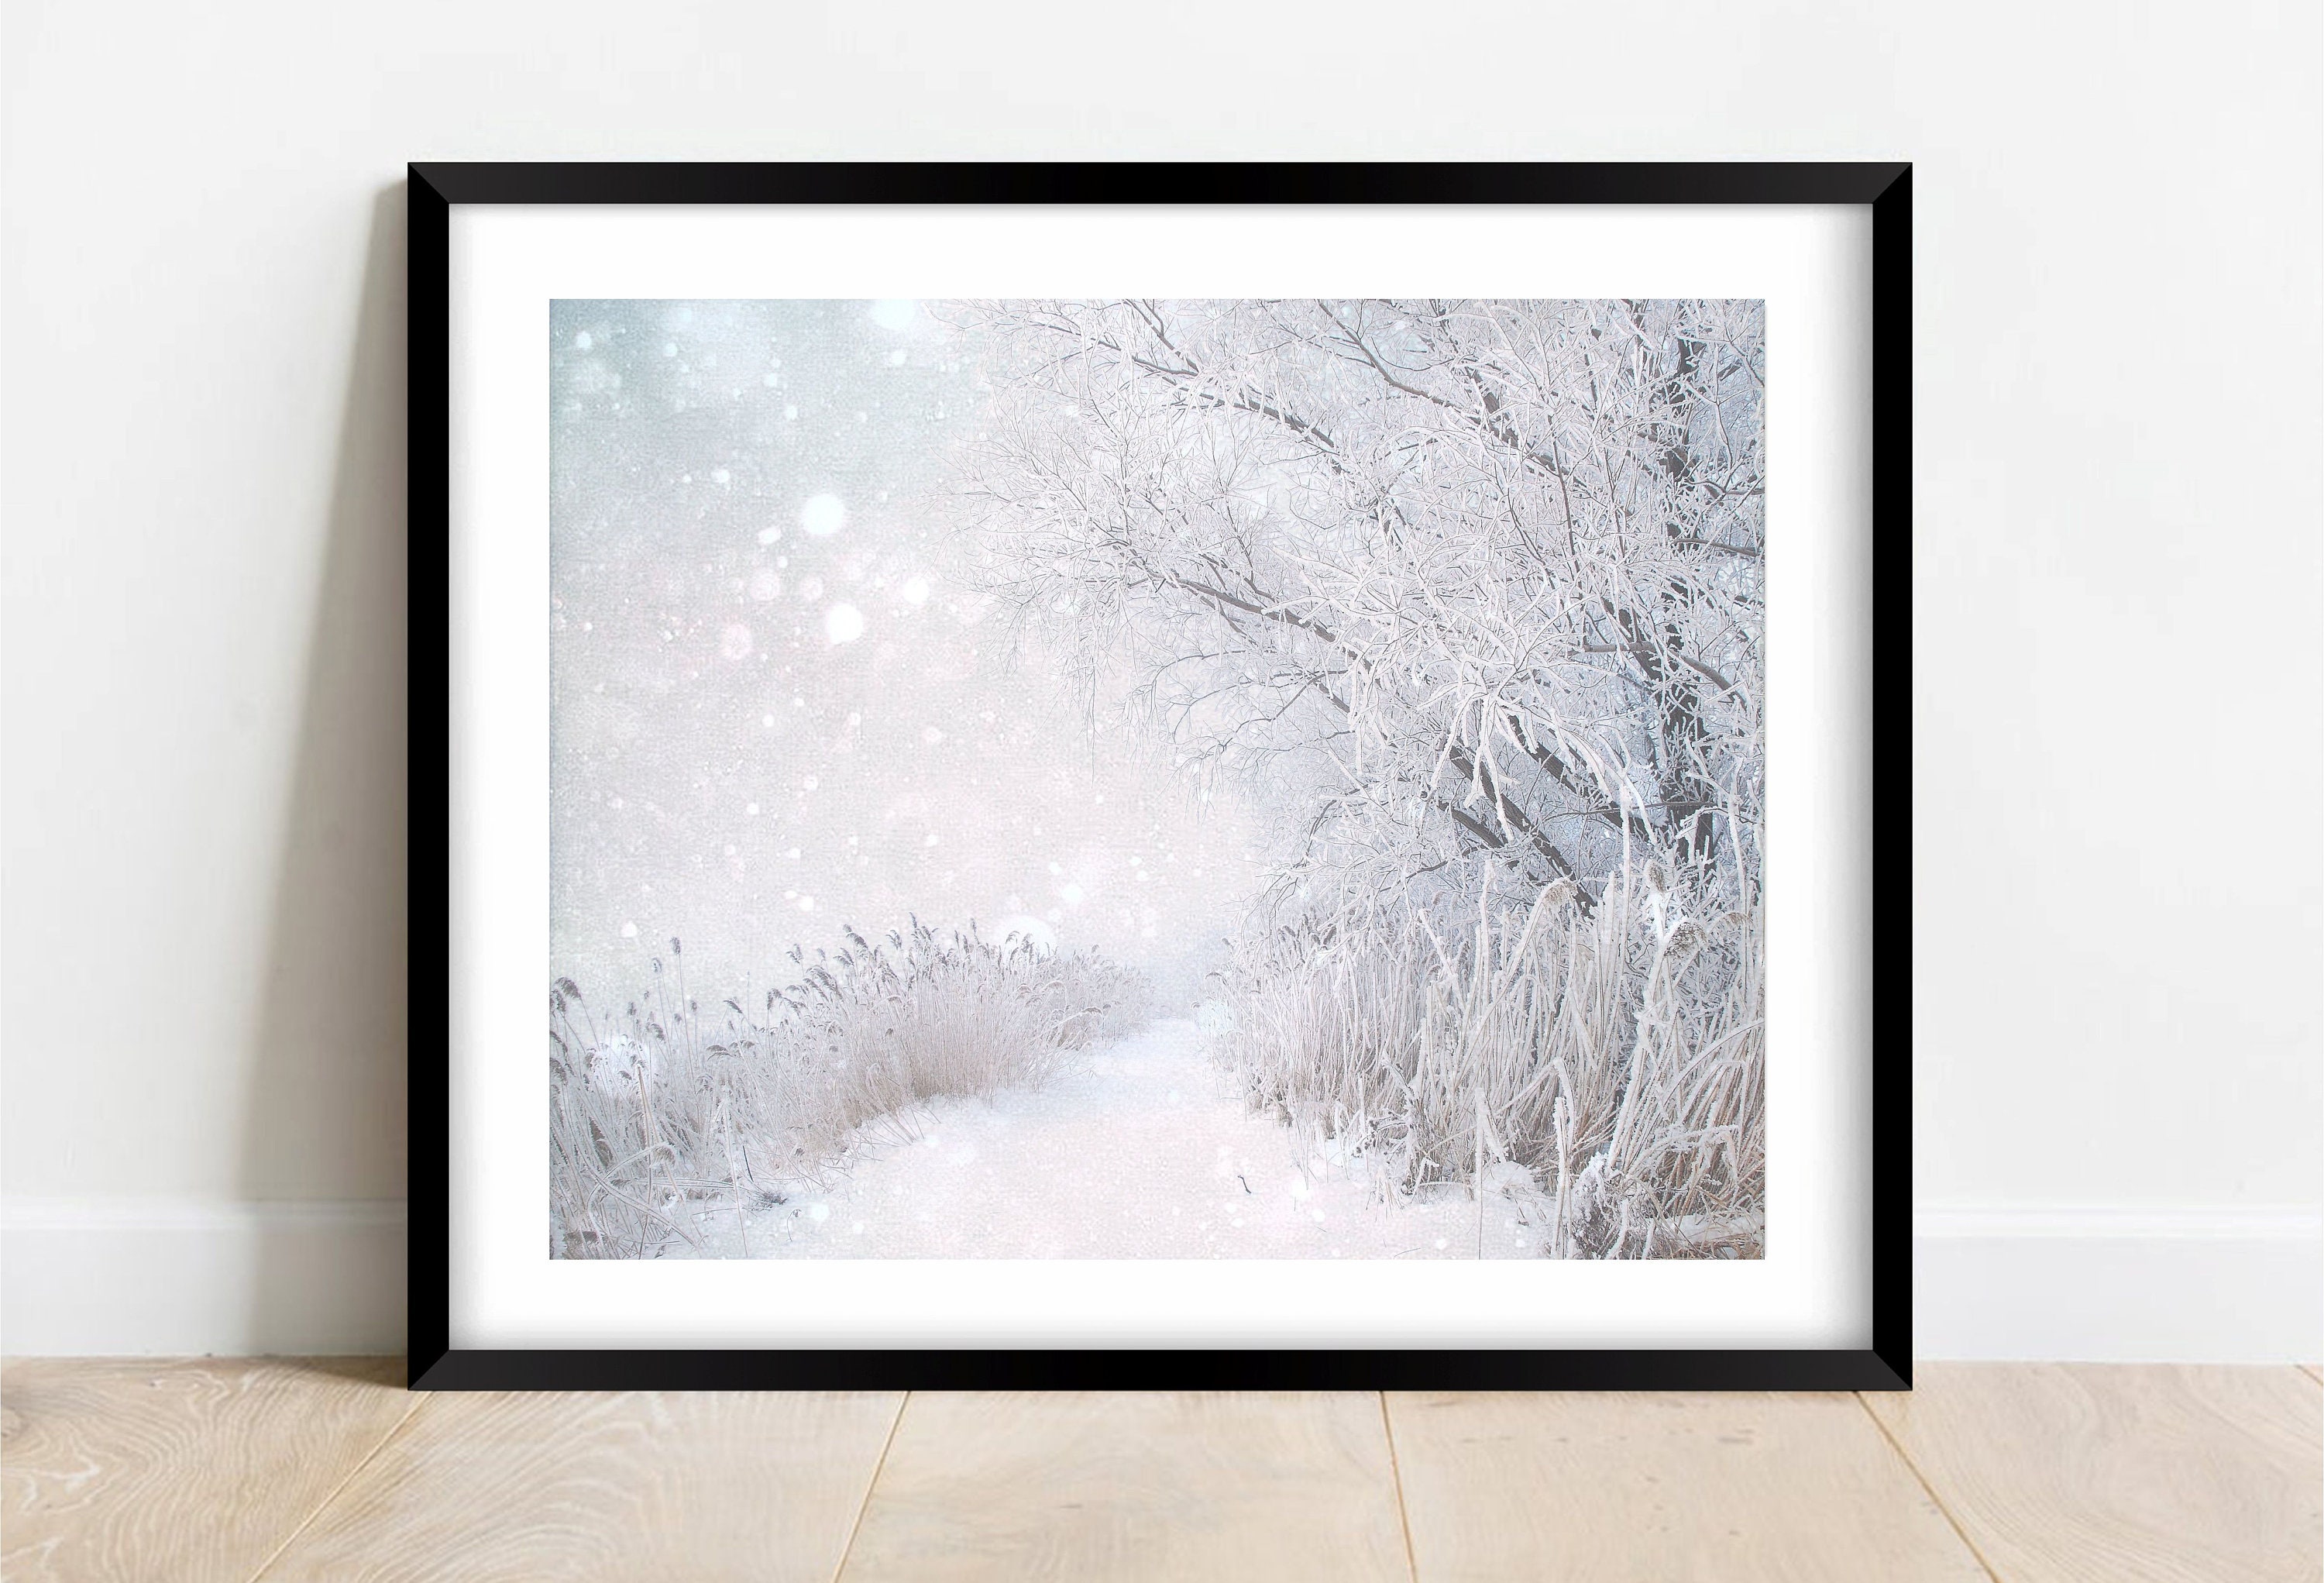 Fond de photographie de paysage d'hiver de Noël blanc neige forêt neige  enfants portrait accessoires de séance photo décoration vinyle (2,4 m x 1,8  m) : : High-Tech